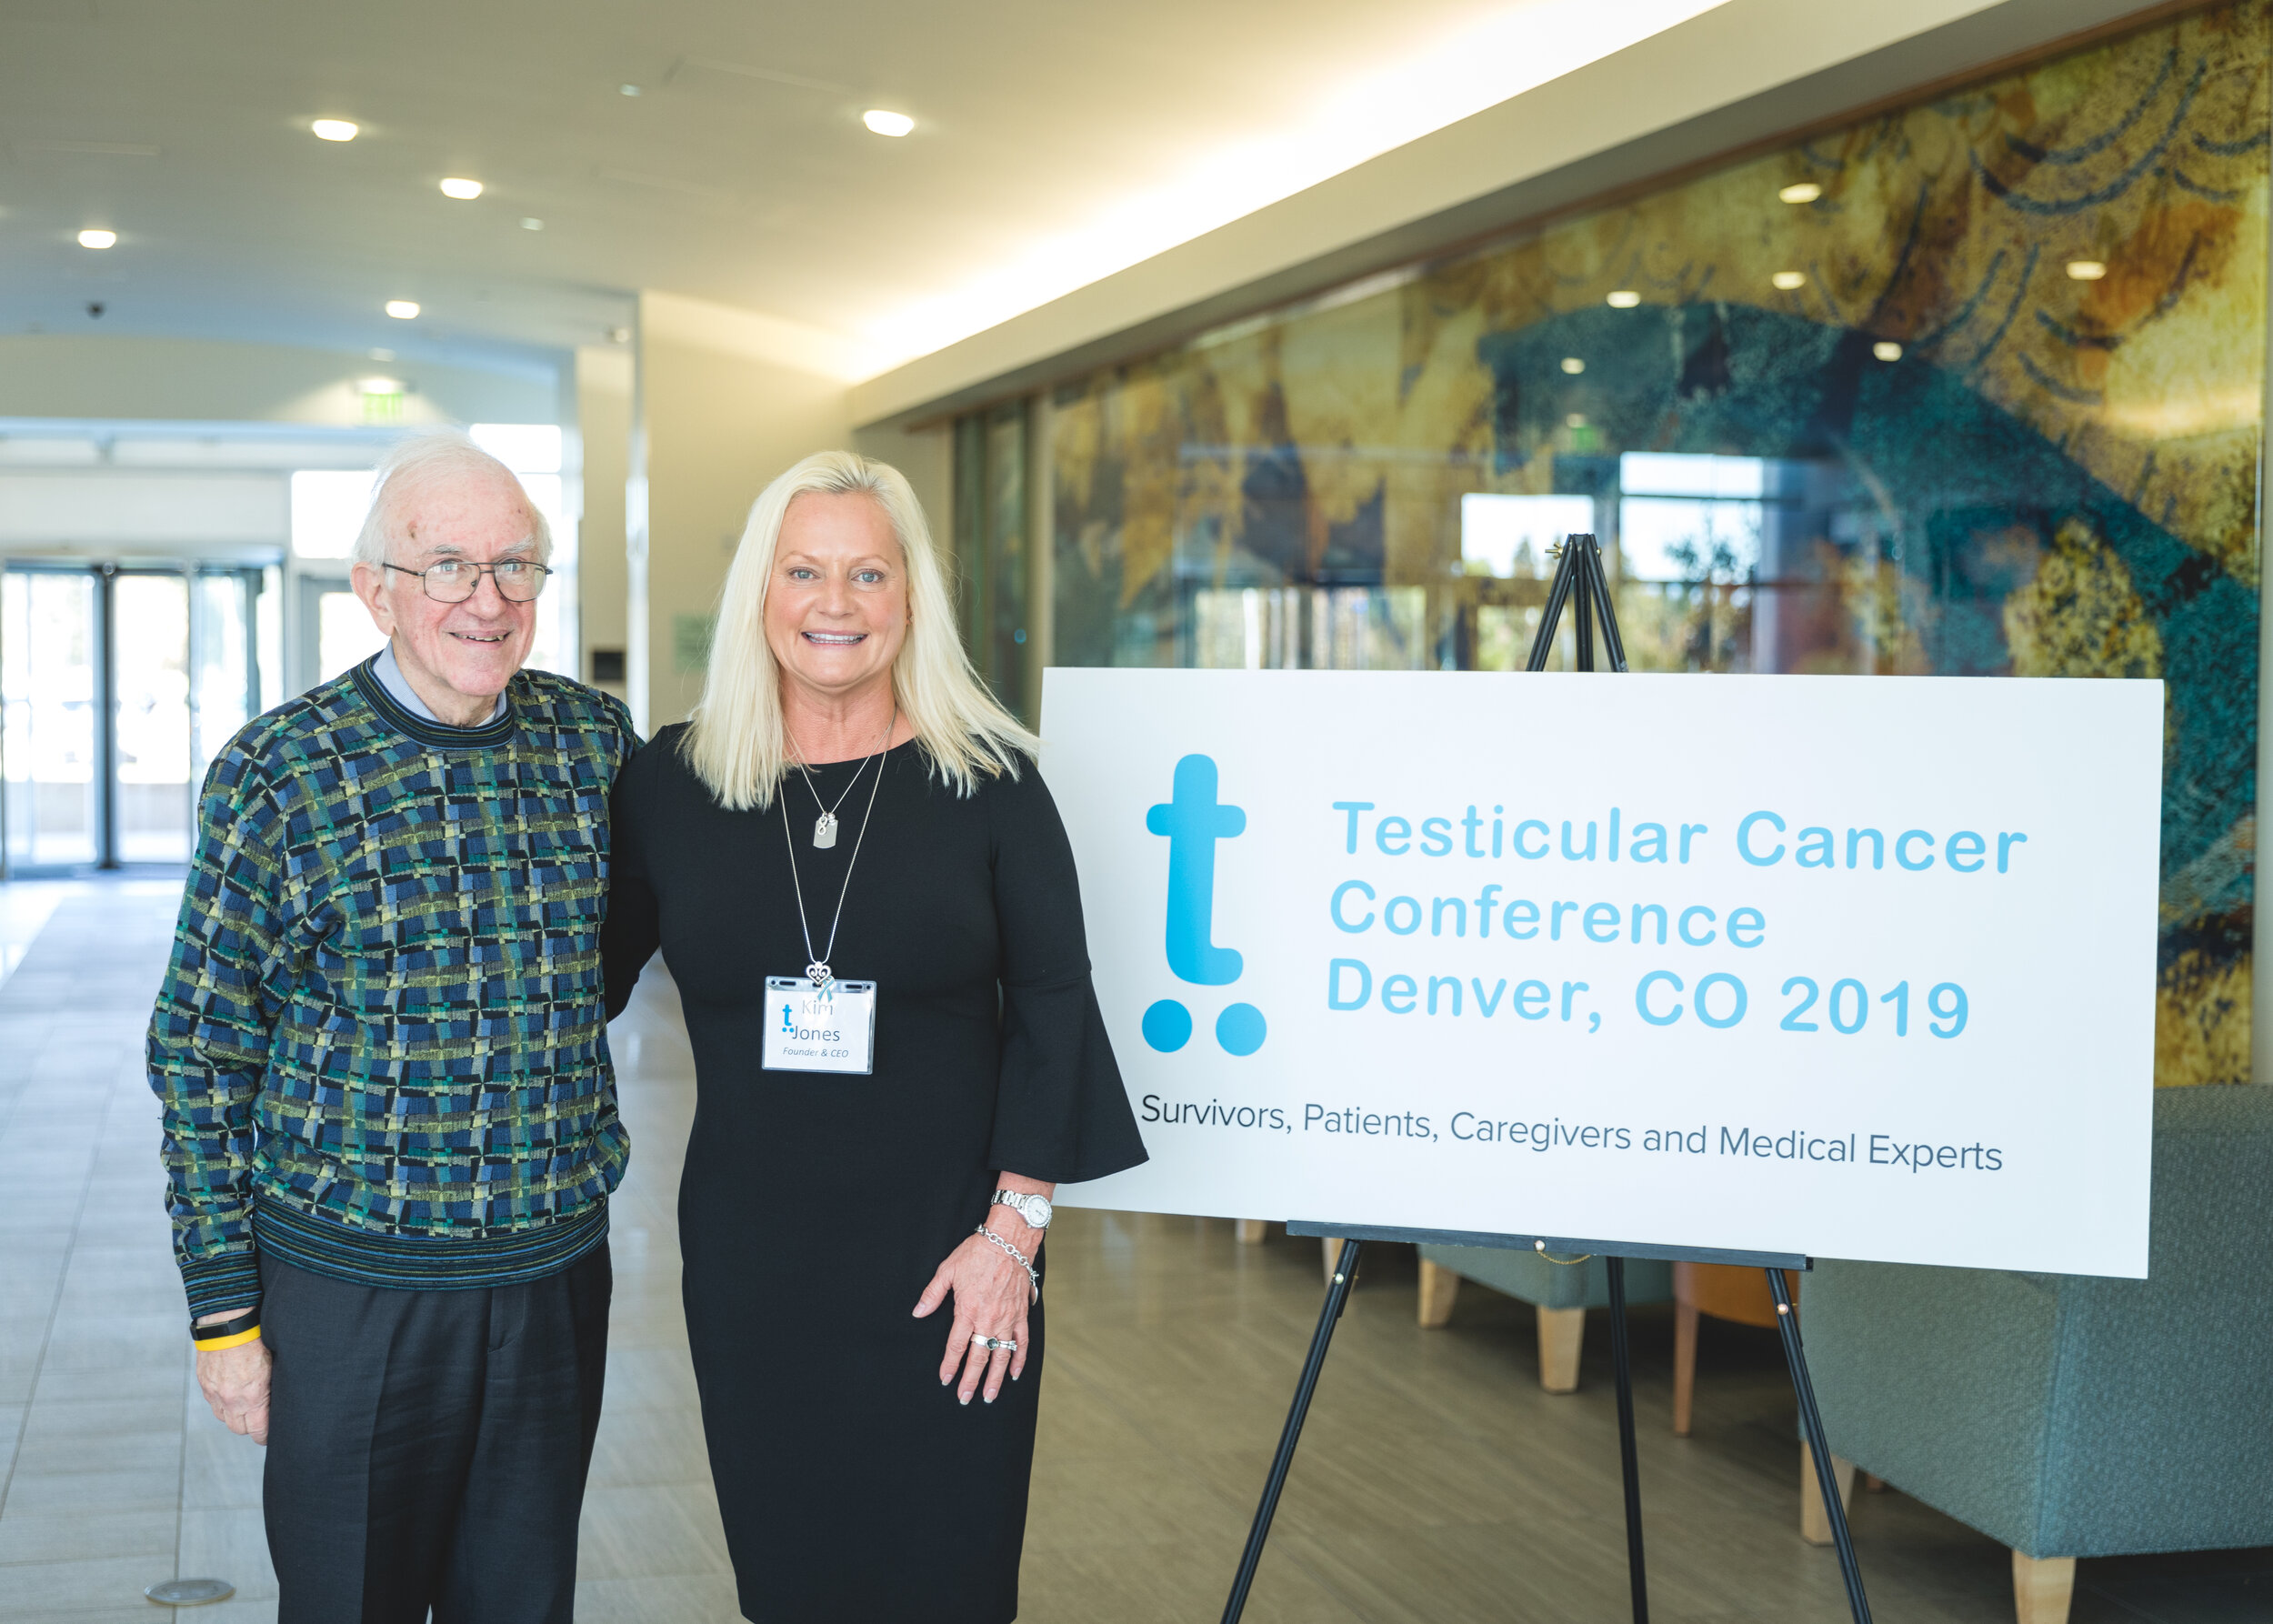 Testicular Cancer Conference Denver with Dr. Lawrence Einhorn